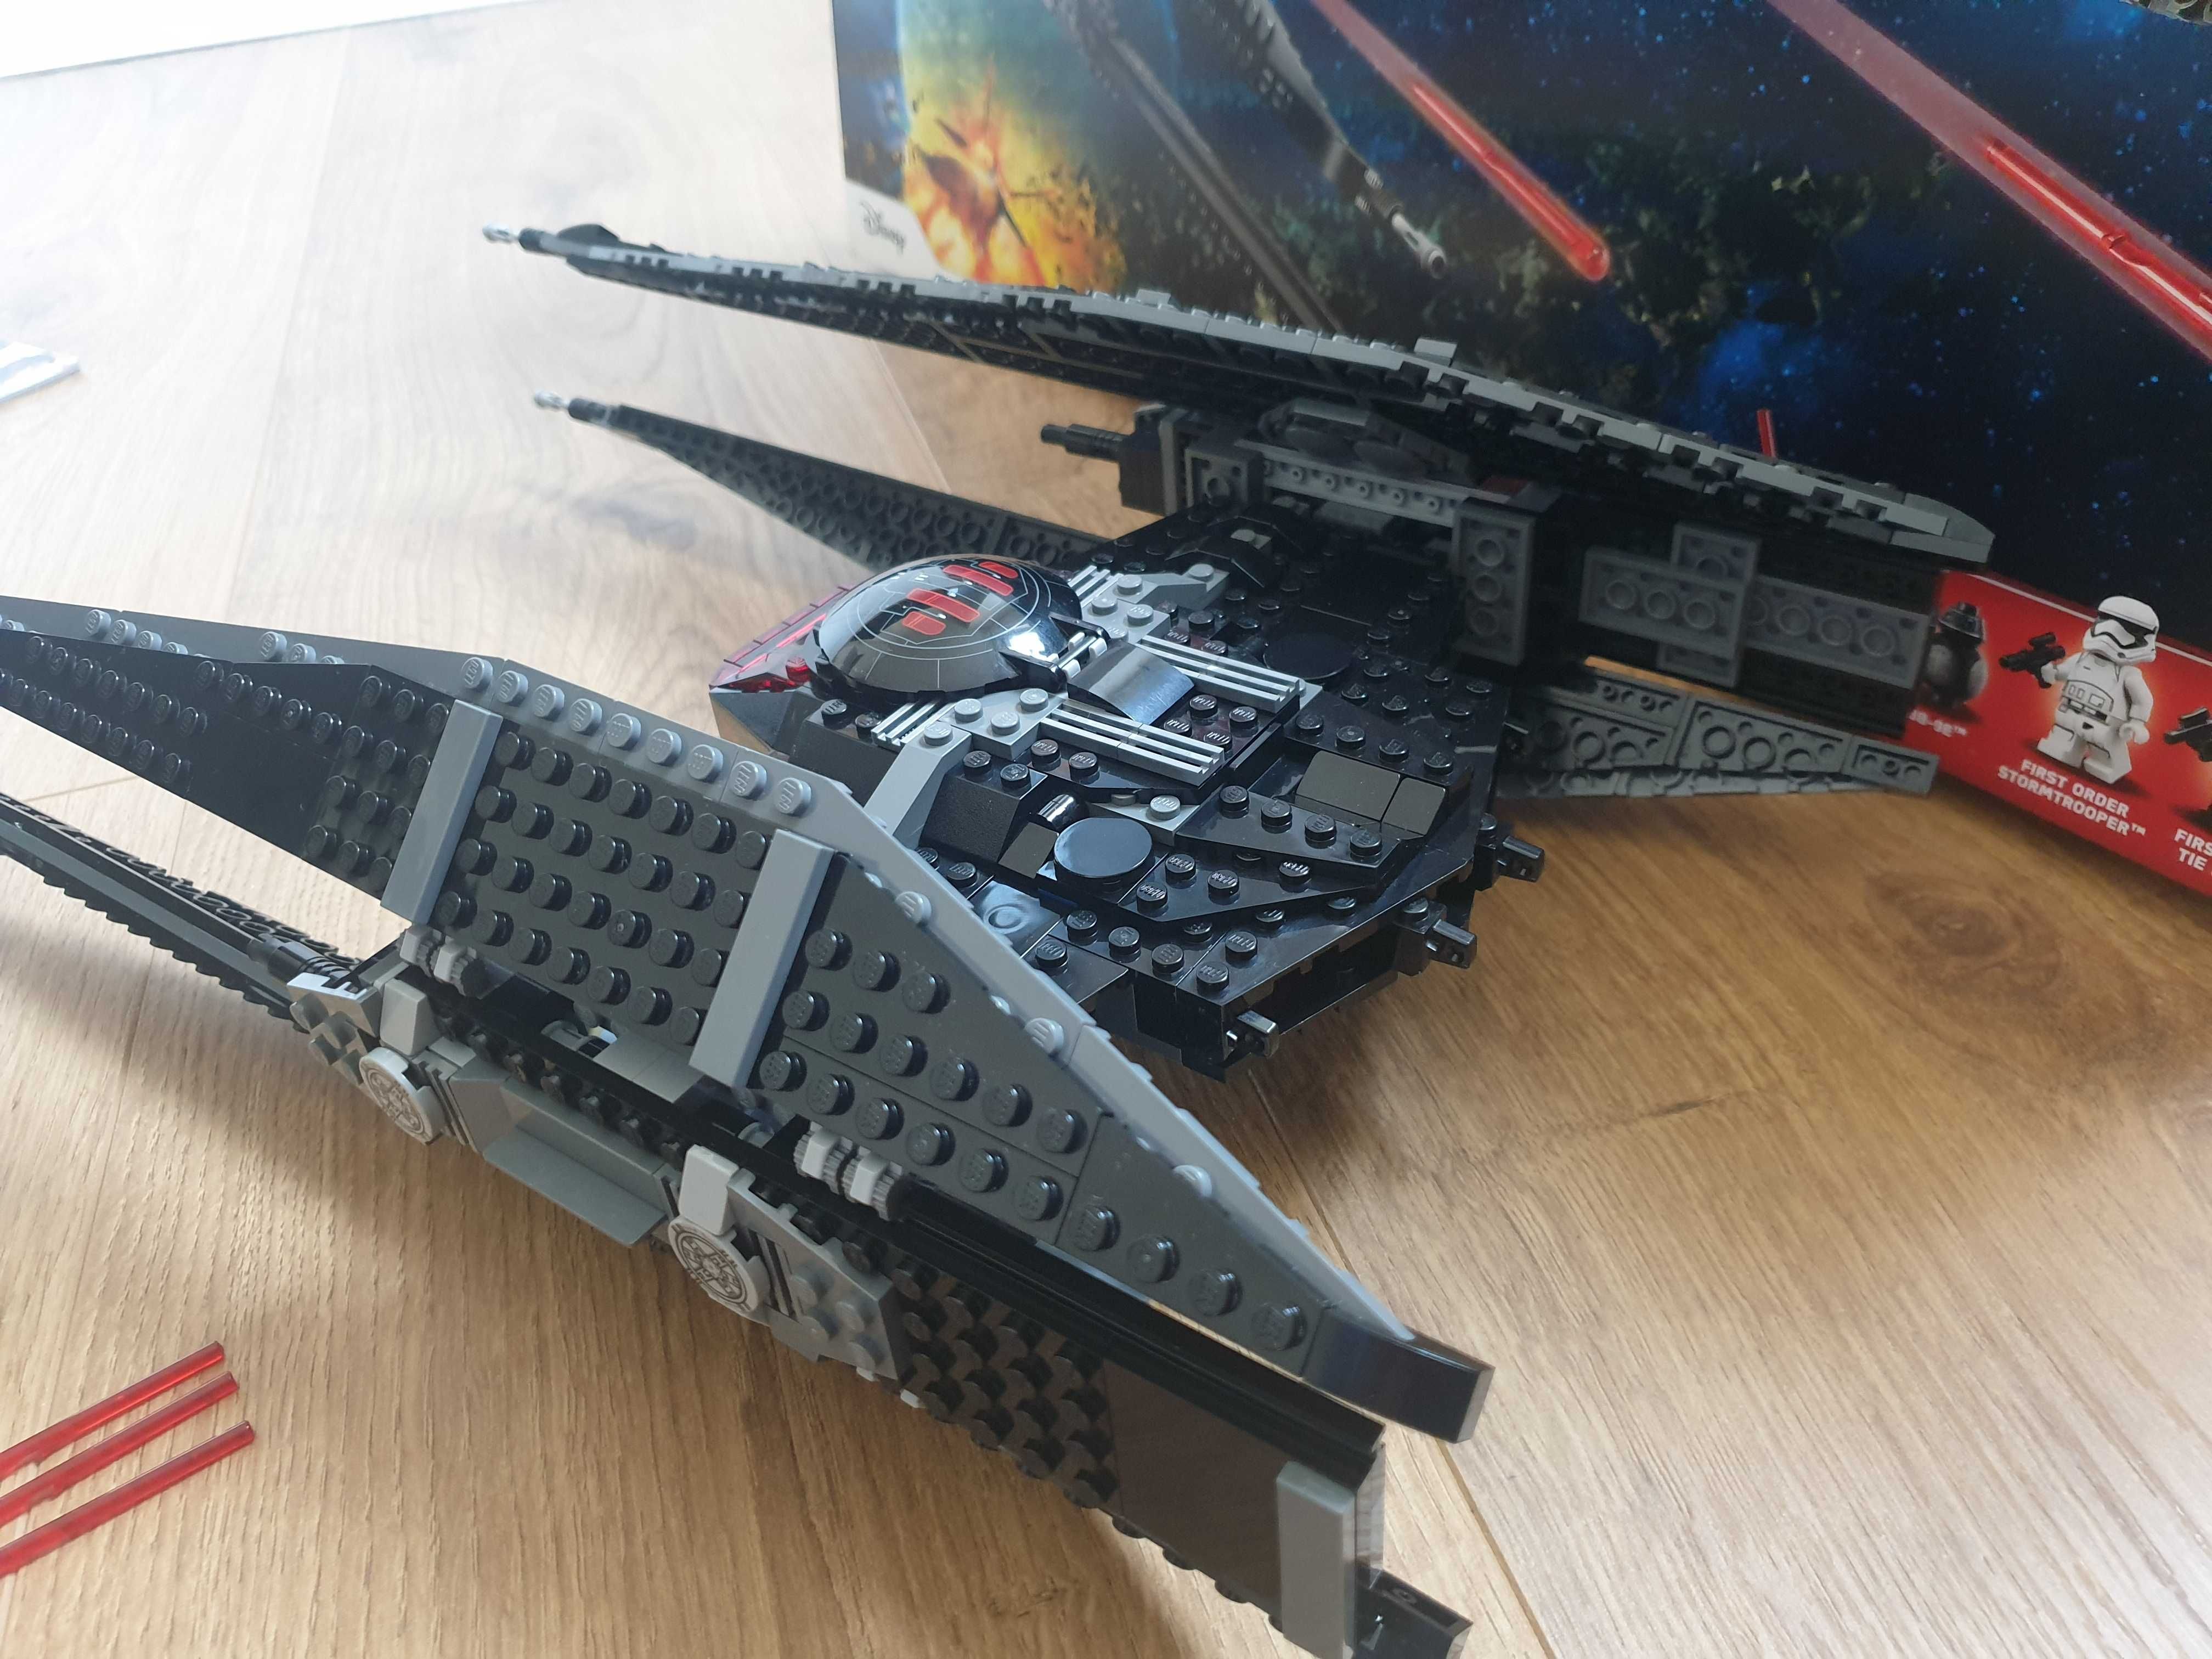 Lego Star Wars 75179 - Kylo Ren's TIE Fighter